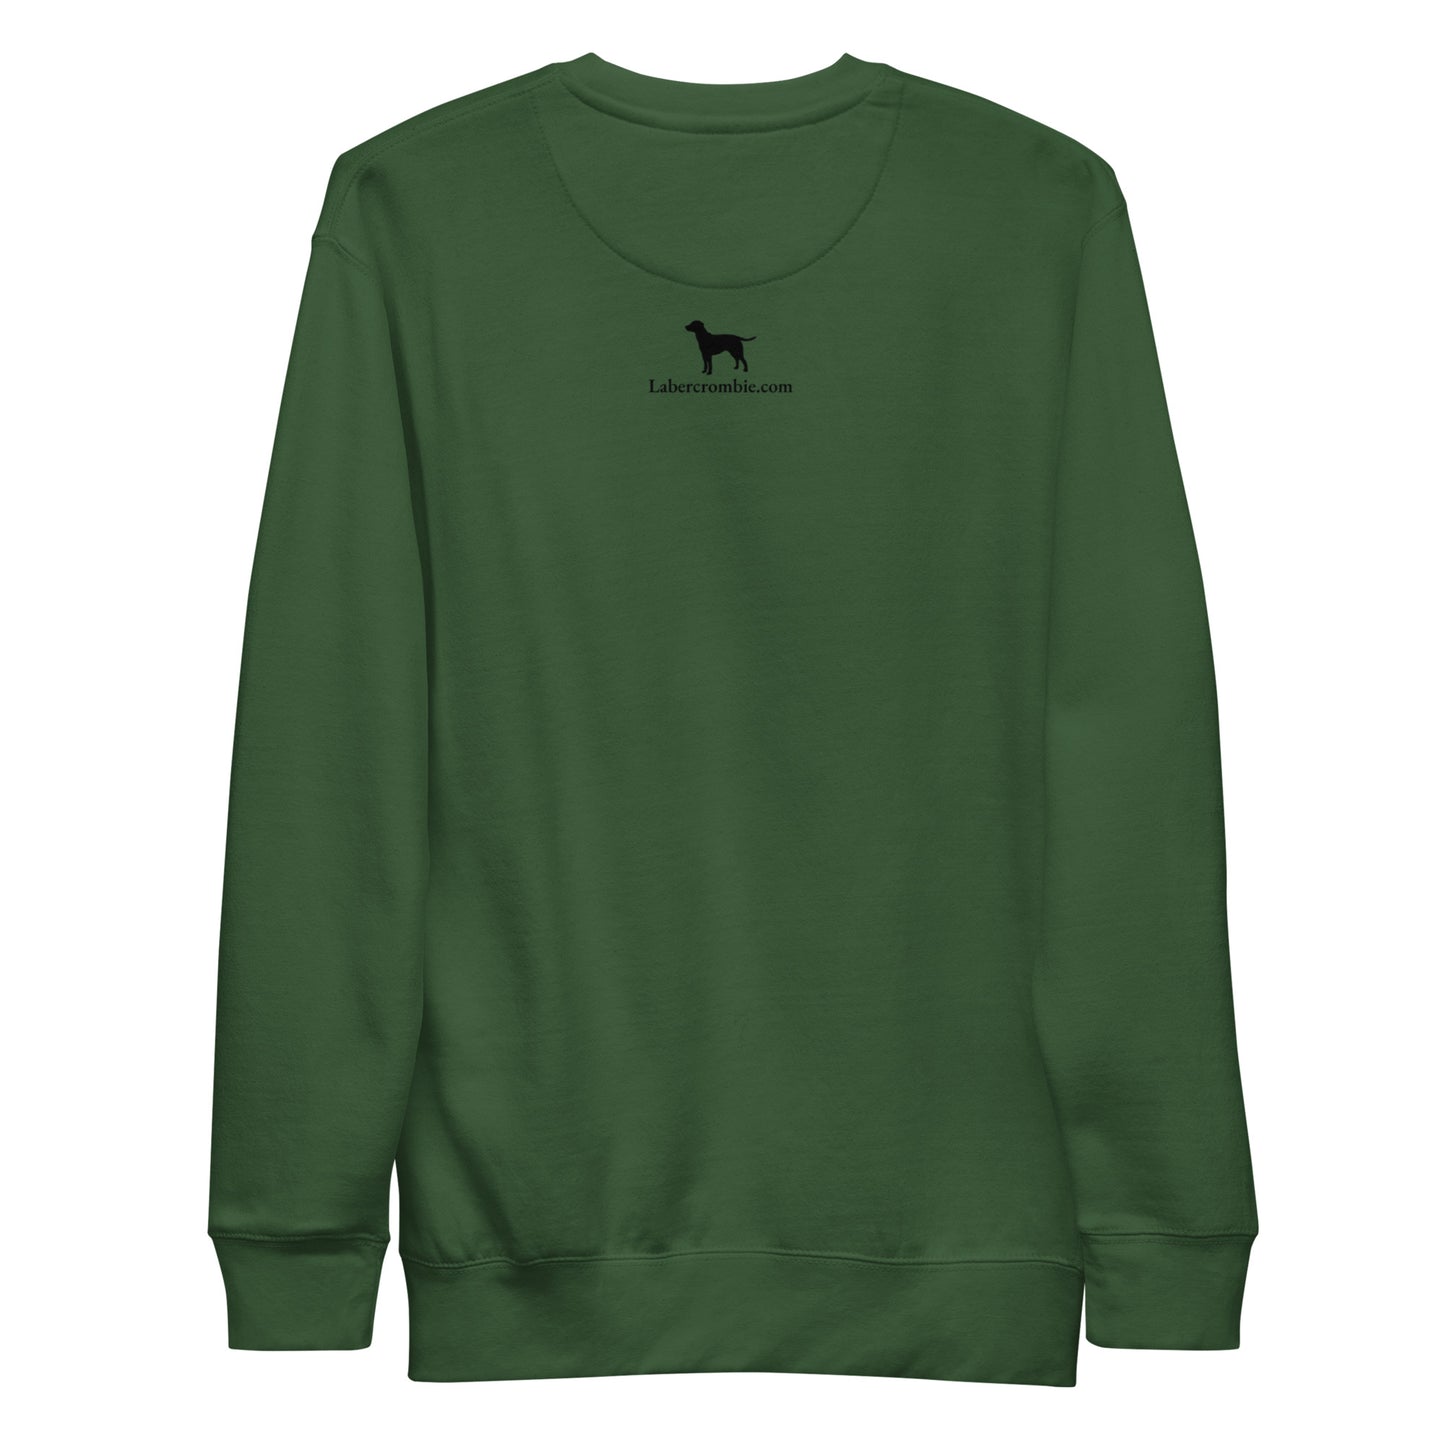 Masters Labercrombie Unisex Premium Sweatshirt